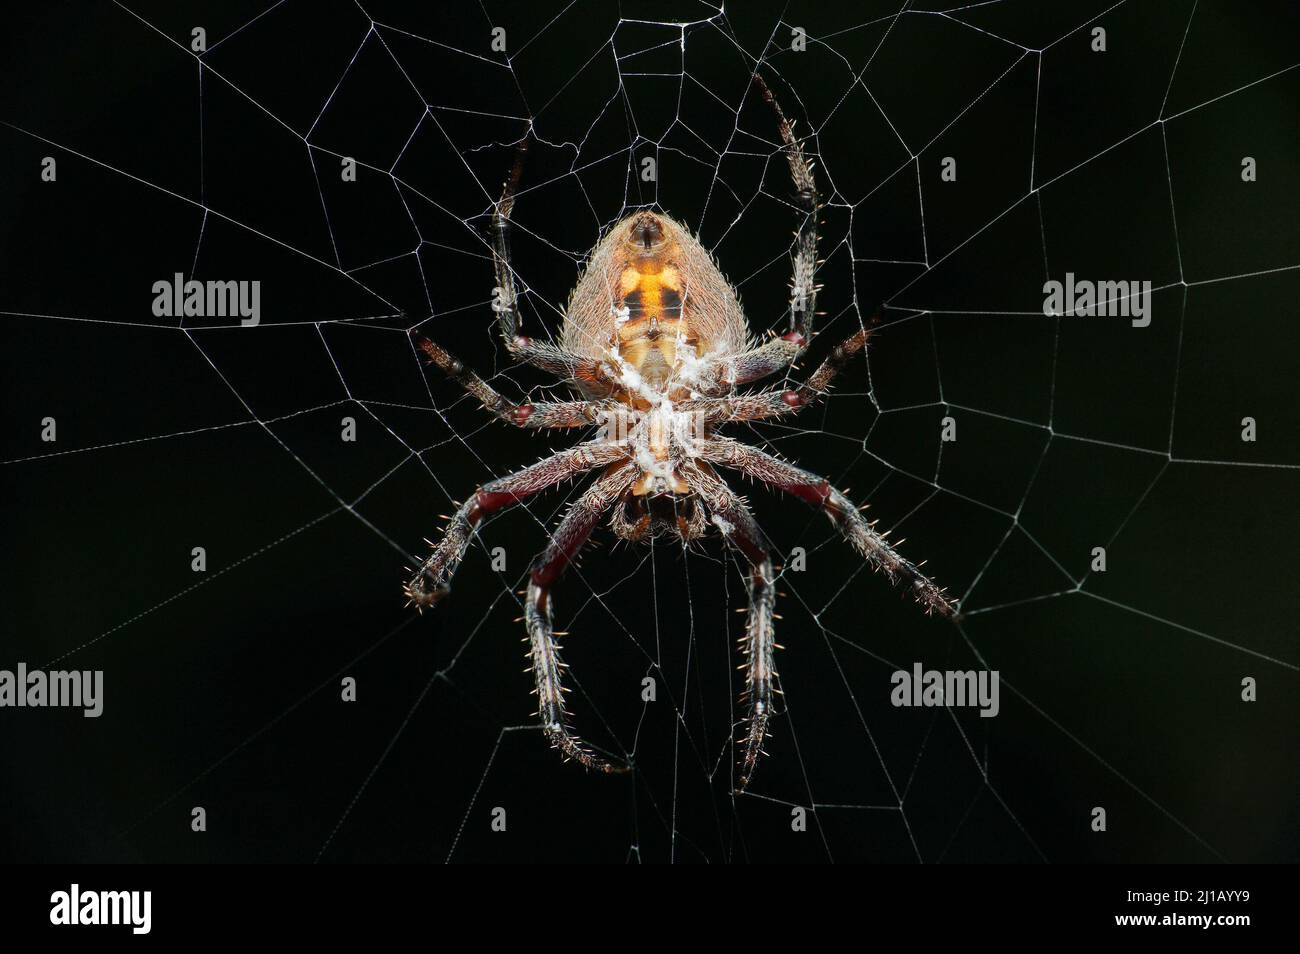 Spotted orb weaver spider, neoscona species, Satara, Maharashtra, India Stock Photo